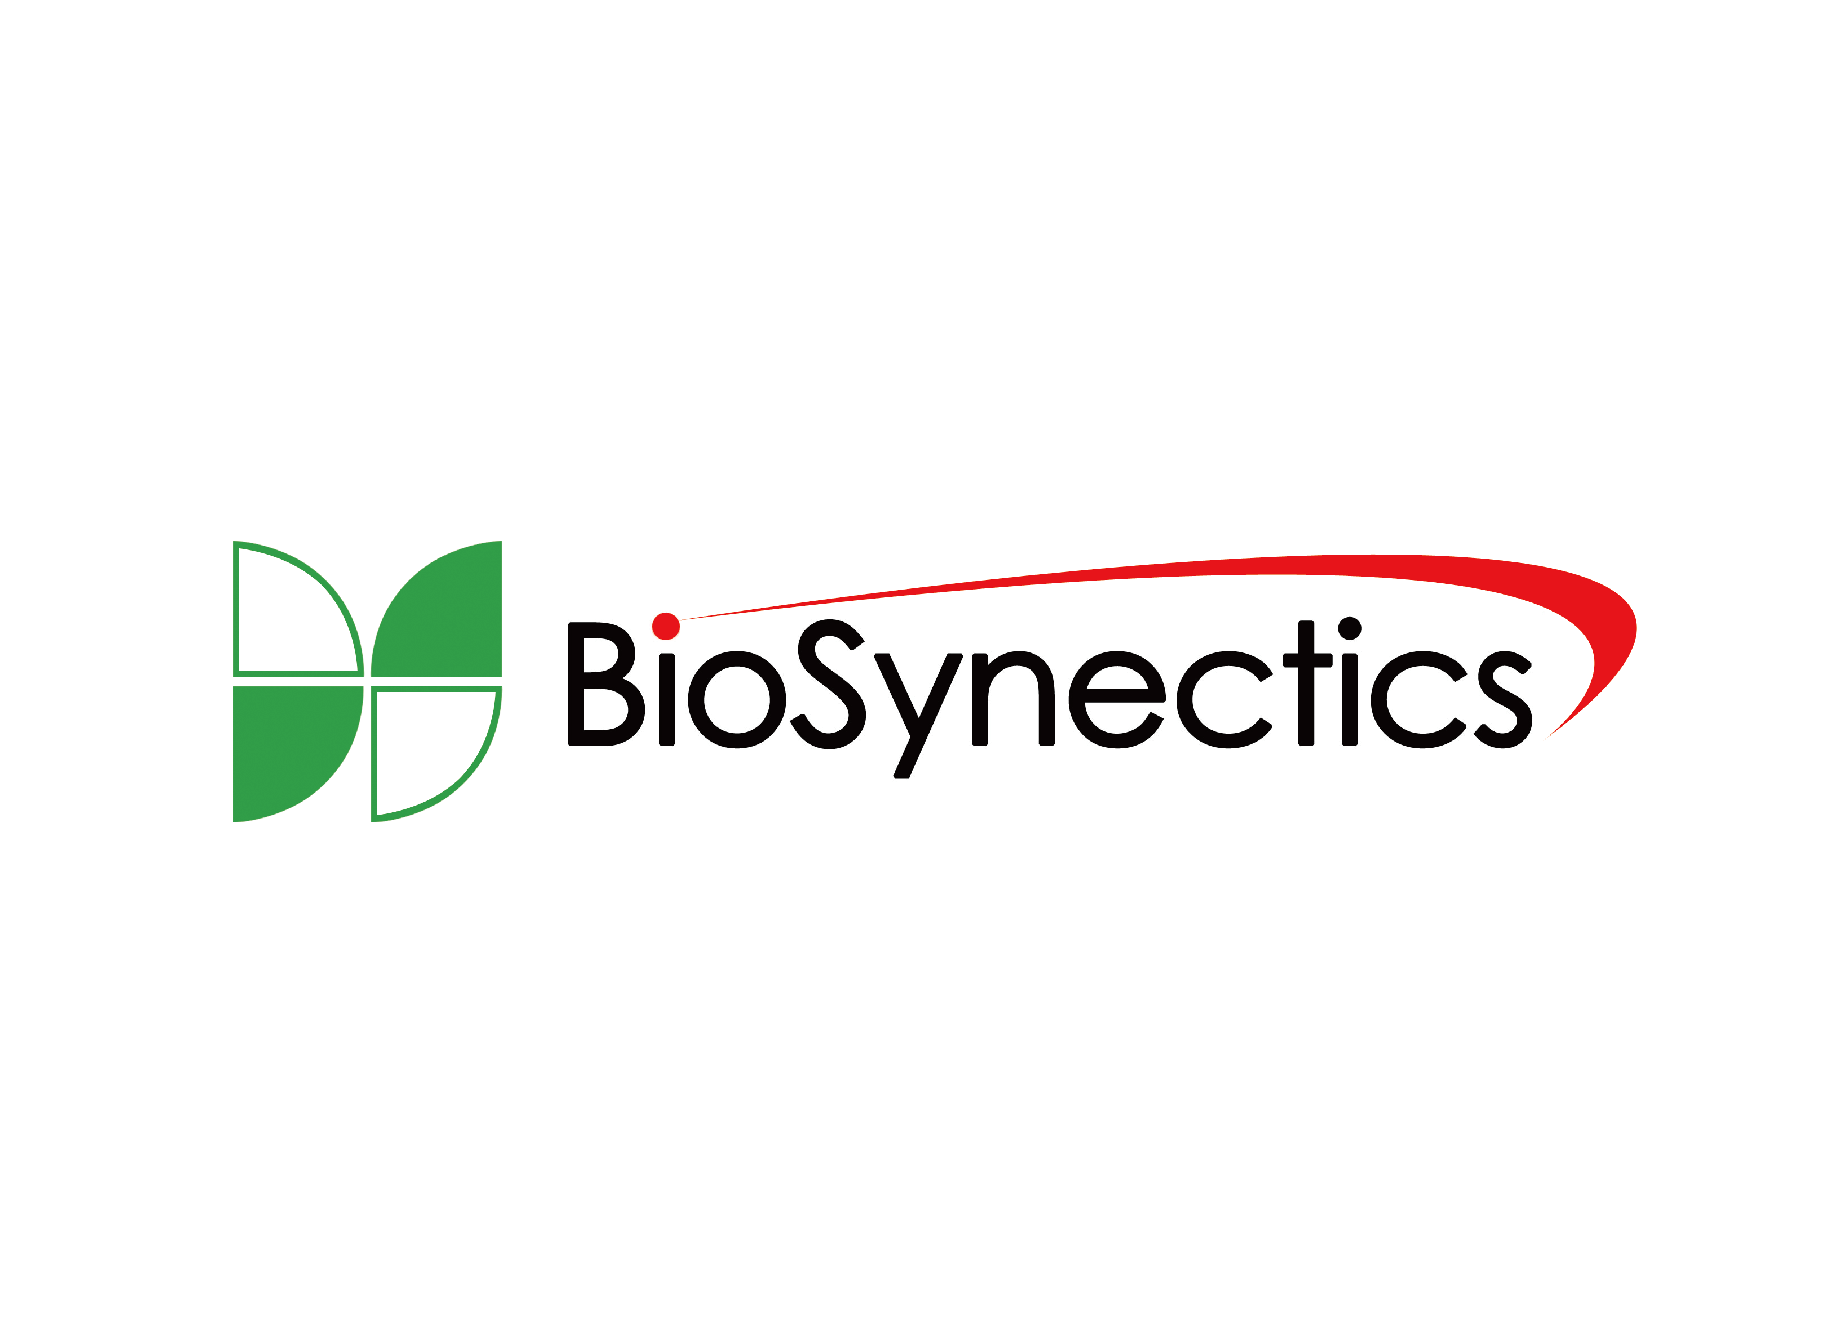 Biosynectics